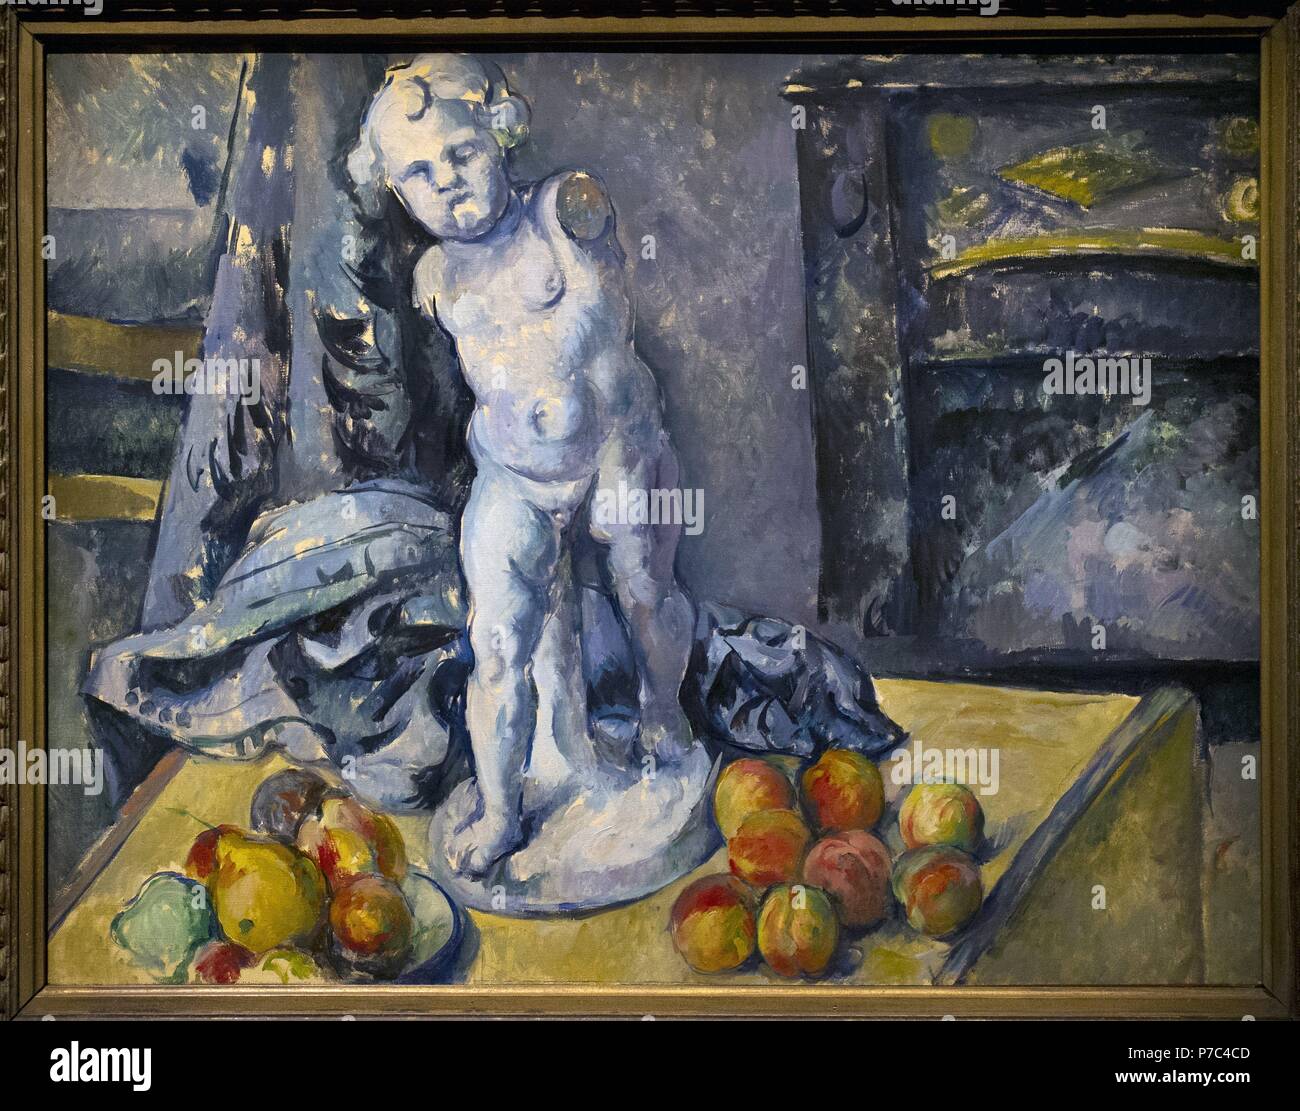 Paul Cézanne (1839-1906). Französische Post-Impressionisten Maler. Stilleben mit Statuette, der 1890er Jahre. National Museum. Stockholm. Schweden. Stockfoto